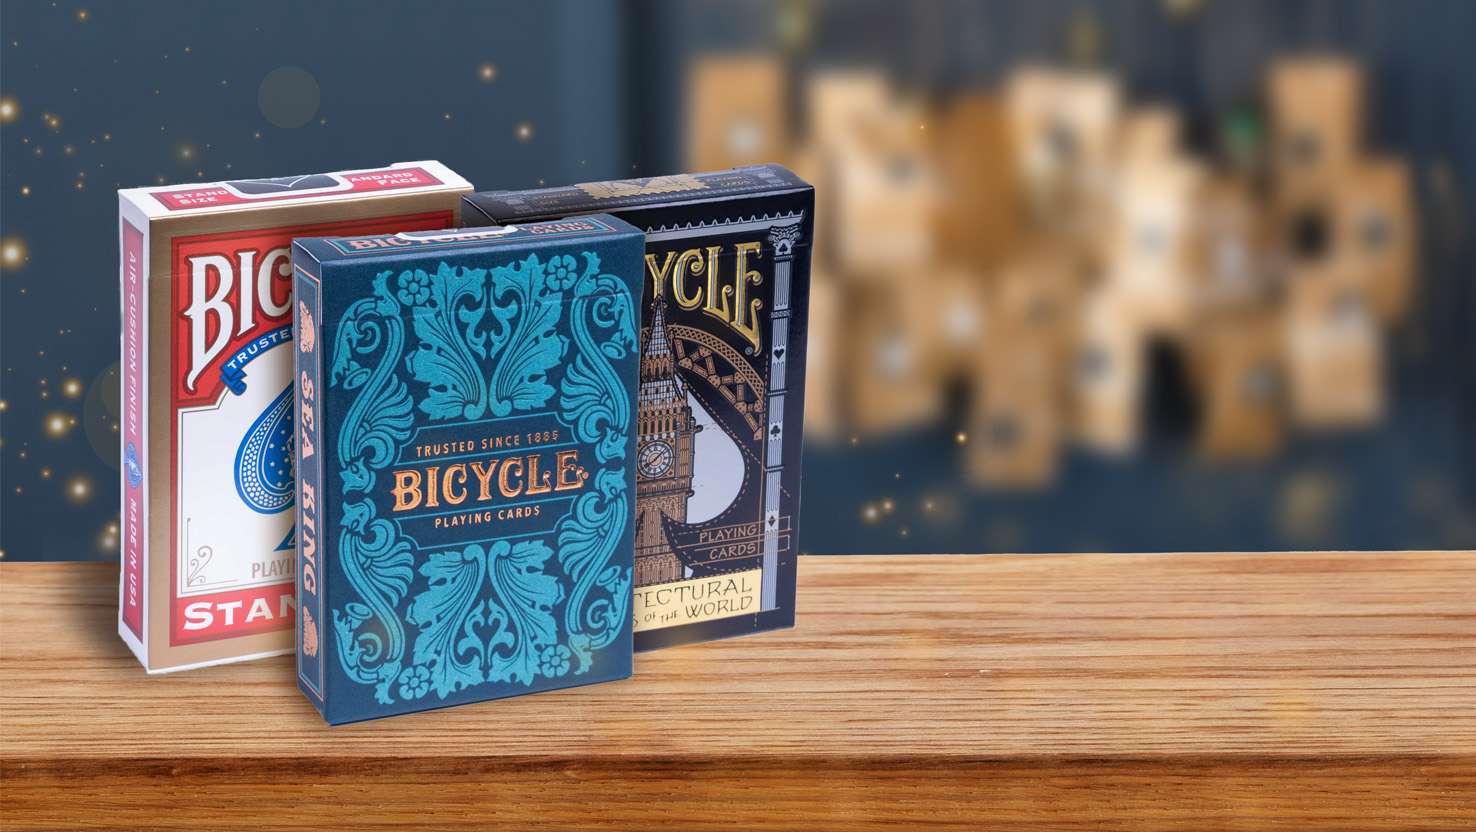 Bicycle Spielkarten sind tolle Kleinigkeiten für das Befüllen eines Adventskalenders